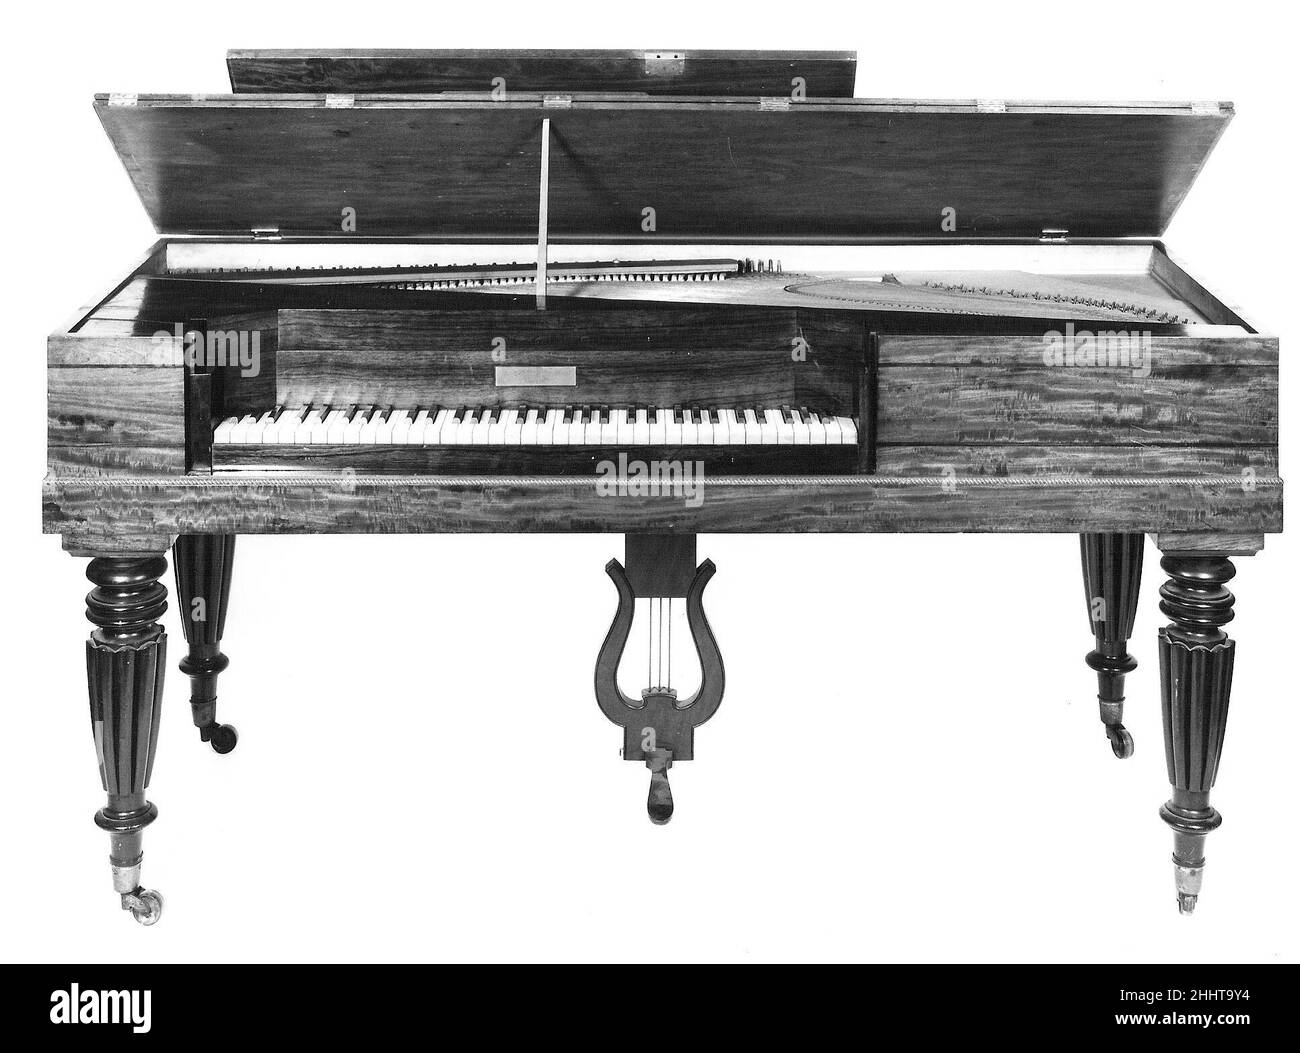 Square Piano 1829 Jonas Chilleries American Chilleries a été le premier important fabricant de pianos en Amérique, incorporant la puissance de vapeur dans ses usines et des innovations comme l'utilisation par l'entreprise, à partir de 1837, d'un cadre en fonte d'une seule pièce.En 1850s, il avait remplacé Erard comme premier fabricant de piano, et dans les 1860s et 1870s, Chilleries et Steinway s'engagaient dans une rivalité féroce.Chilleries a été le premier producteur américain de grands, mais les pianos produits pour usage domestique, y compris des carrés comme cet instrument ainsi que des montants, ont largement dépassé les modèles plus grands et plus chers.Ceci s Banque D'Images